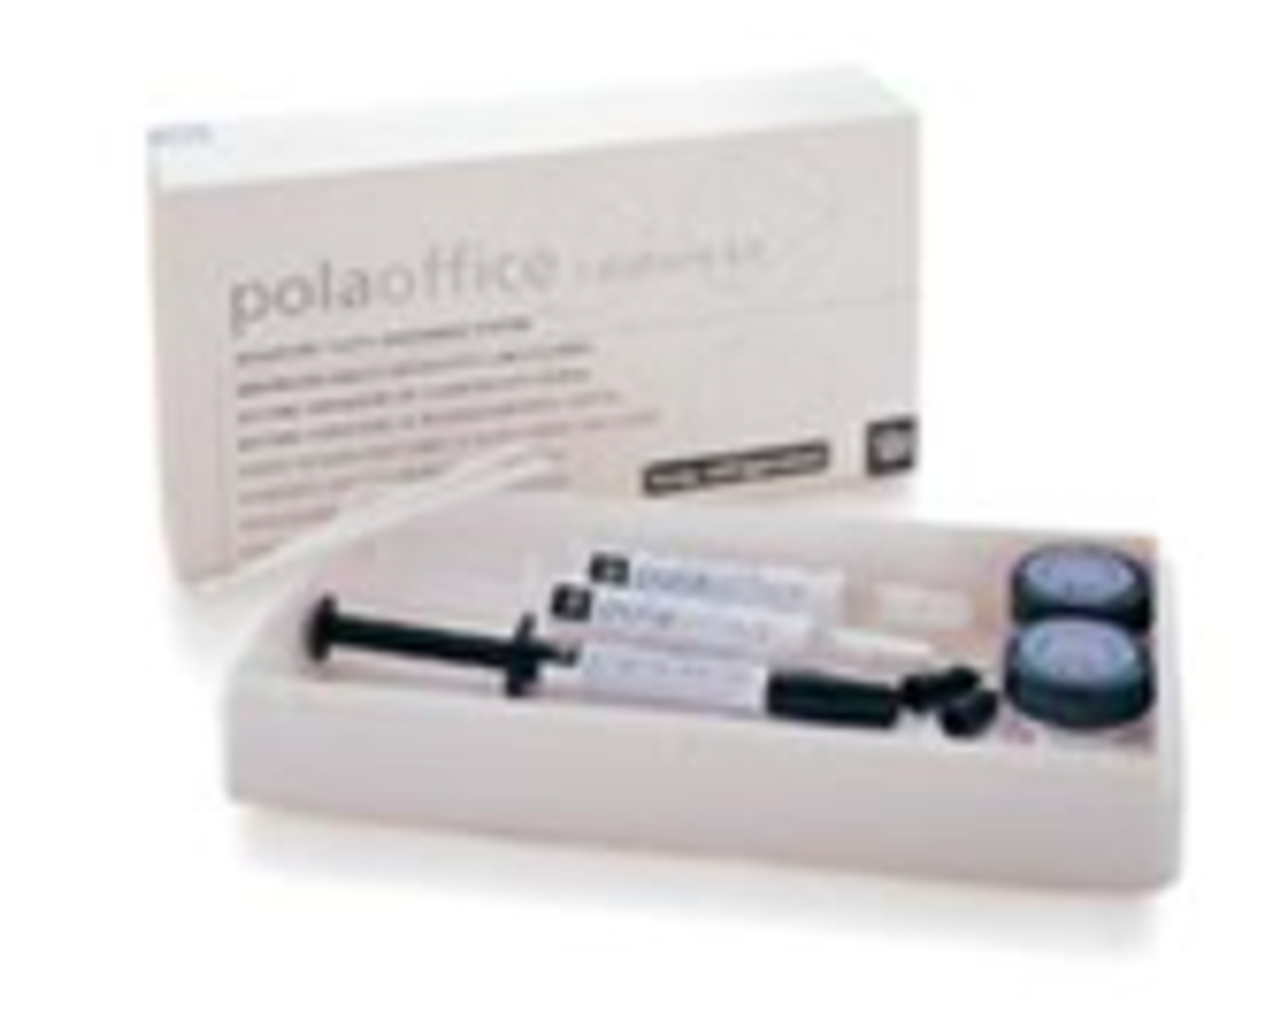 Pola In Office 1 Patient Kit 35% Hydrogen Peroxide